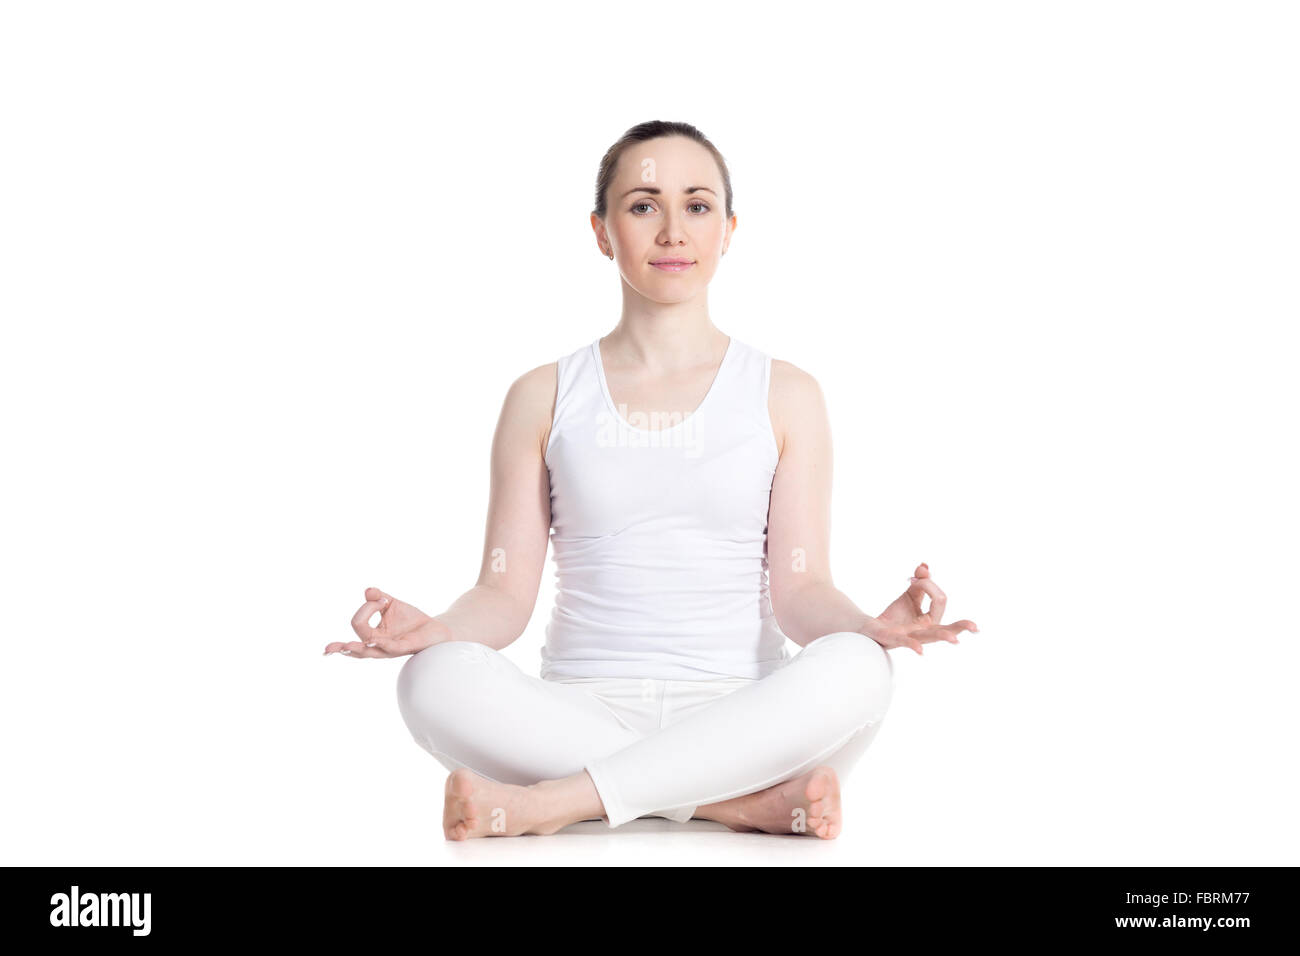 Belle jeune femme sportive pratiquant le yoga, assis dans (facile, agréable décent posent), Sukhasana, asana pour la méditation Banque D'Images